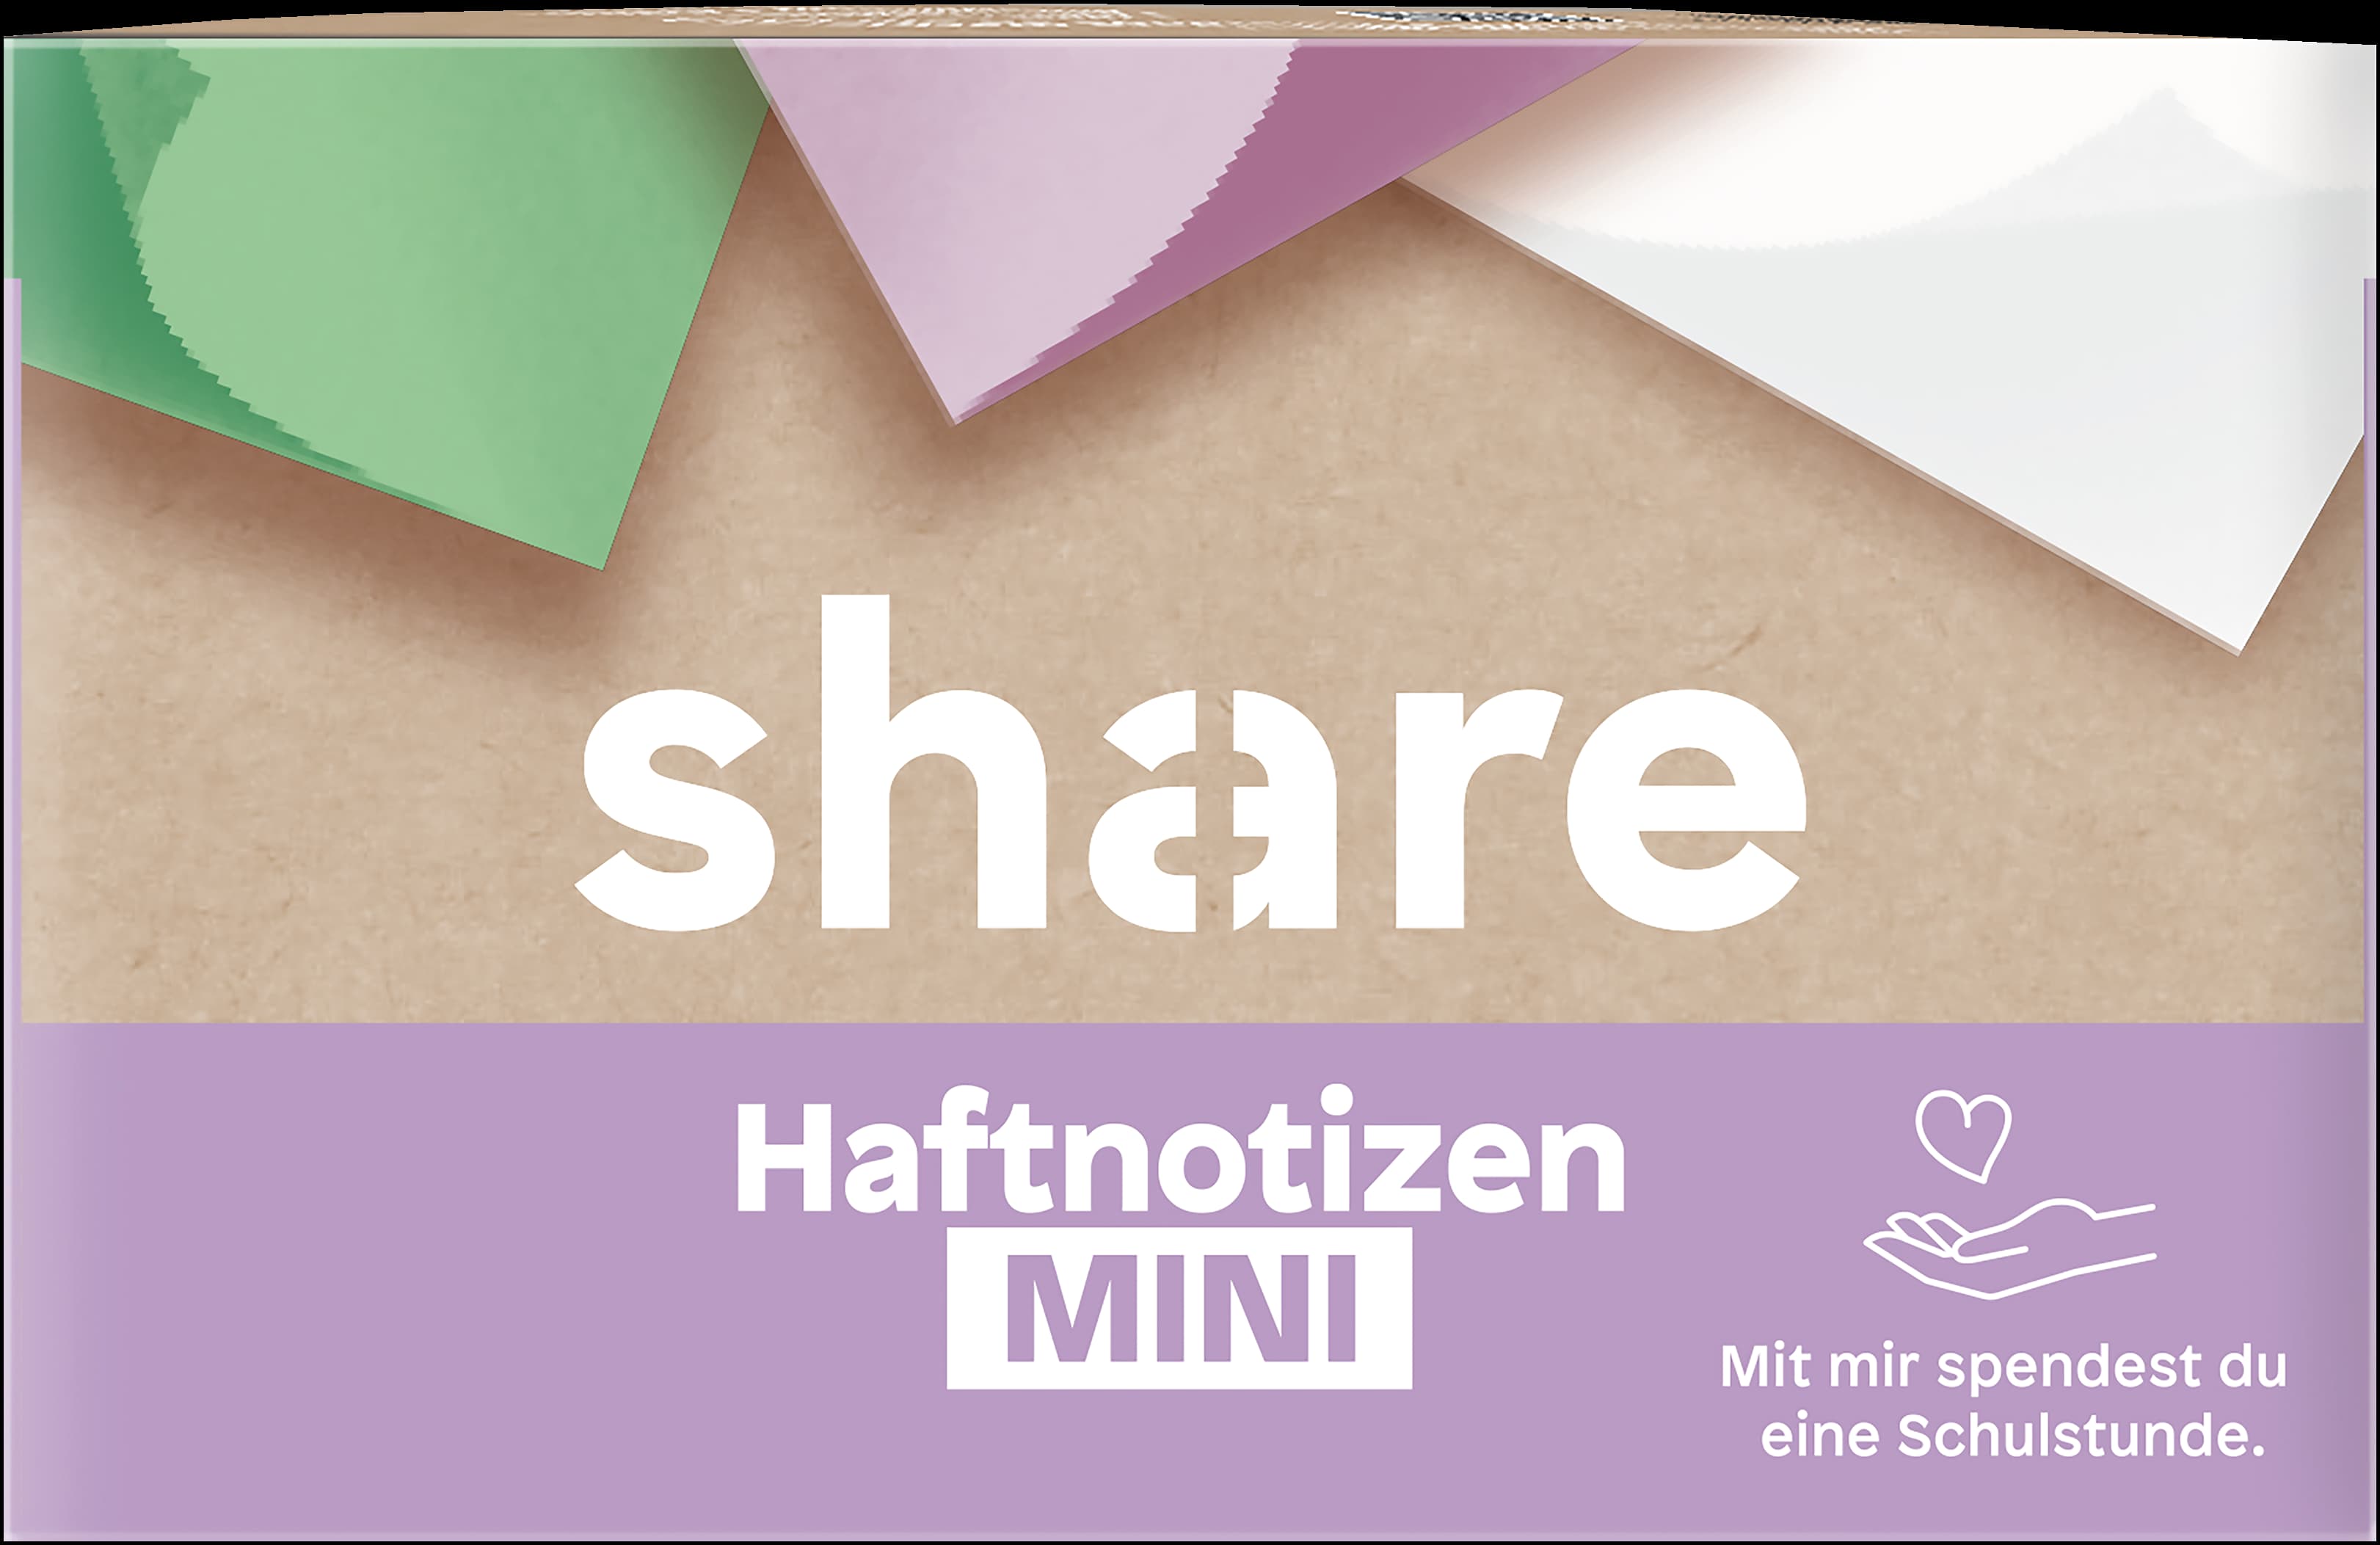 Eine Packung „share“ Haftnotizen Mini, die hervorhebt, dass es sich um ein hochwertiges Markenprodukt aus Deutschland handelt und so.